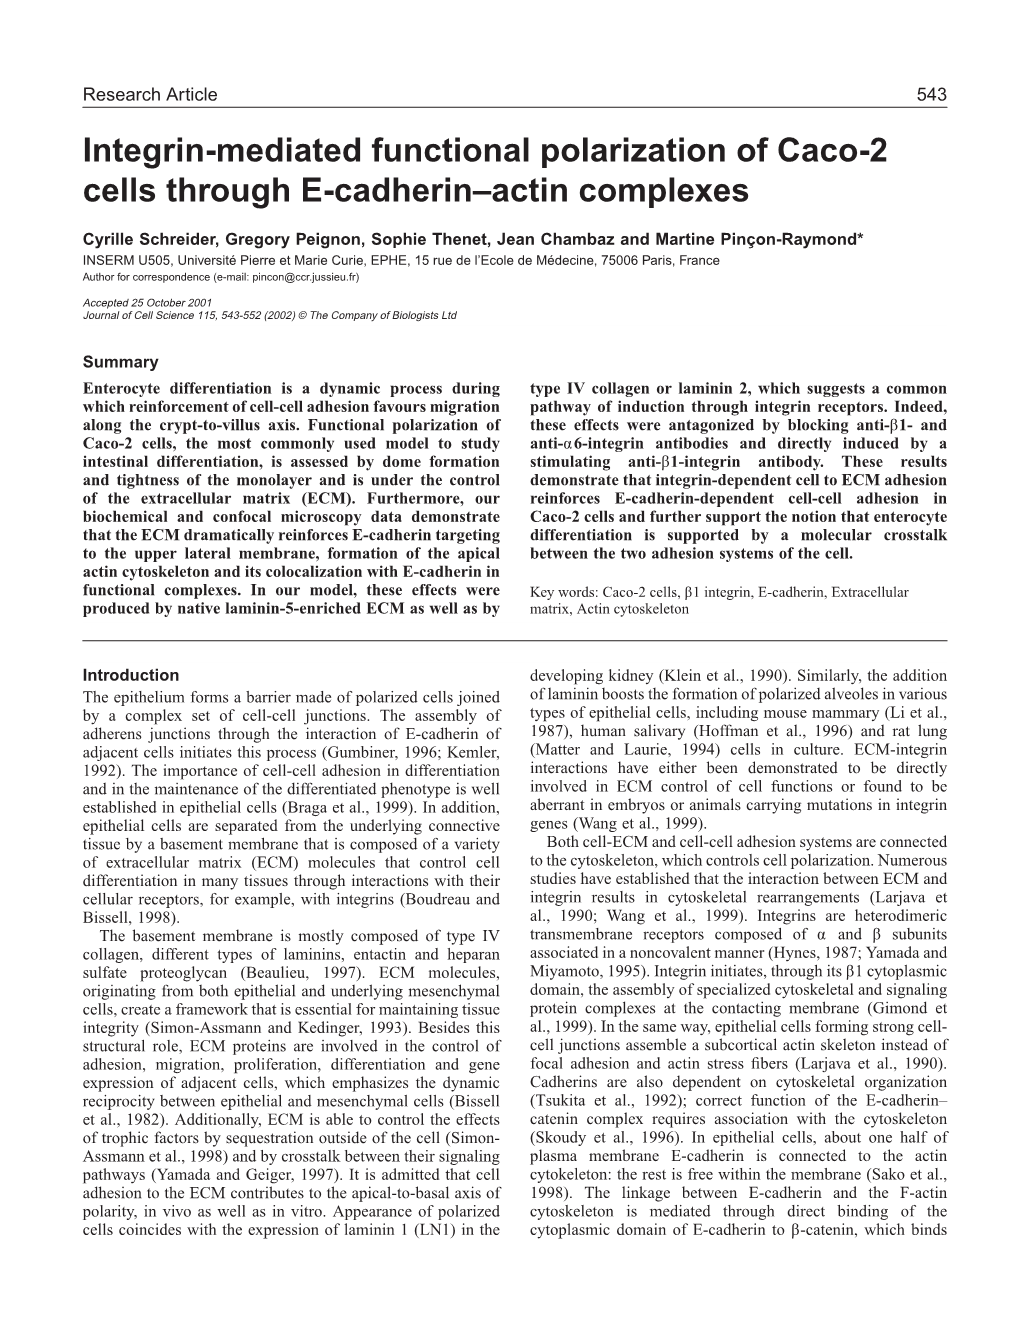 Integrin-Induced E-Cadherin–Actin Complexes 545